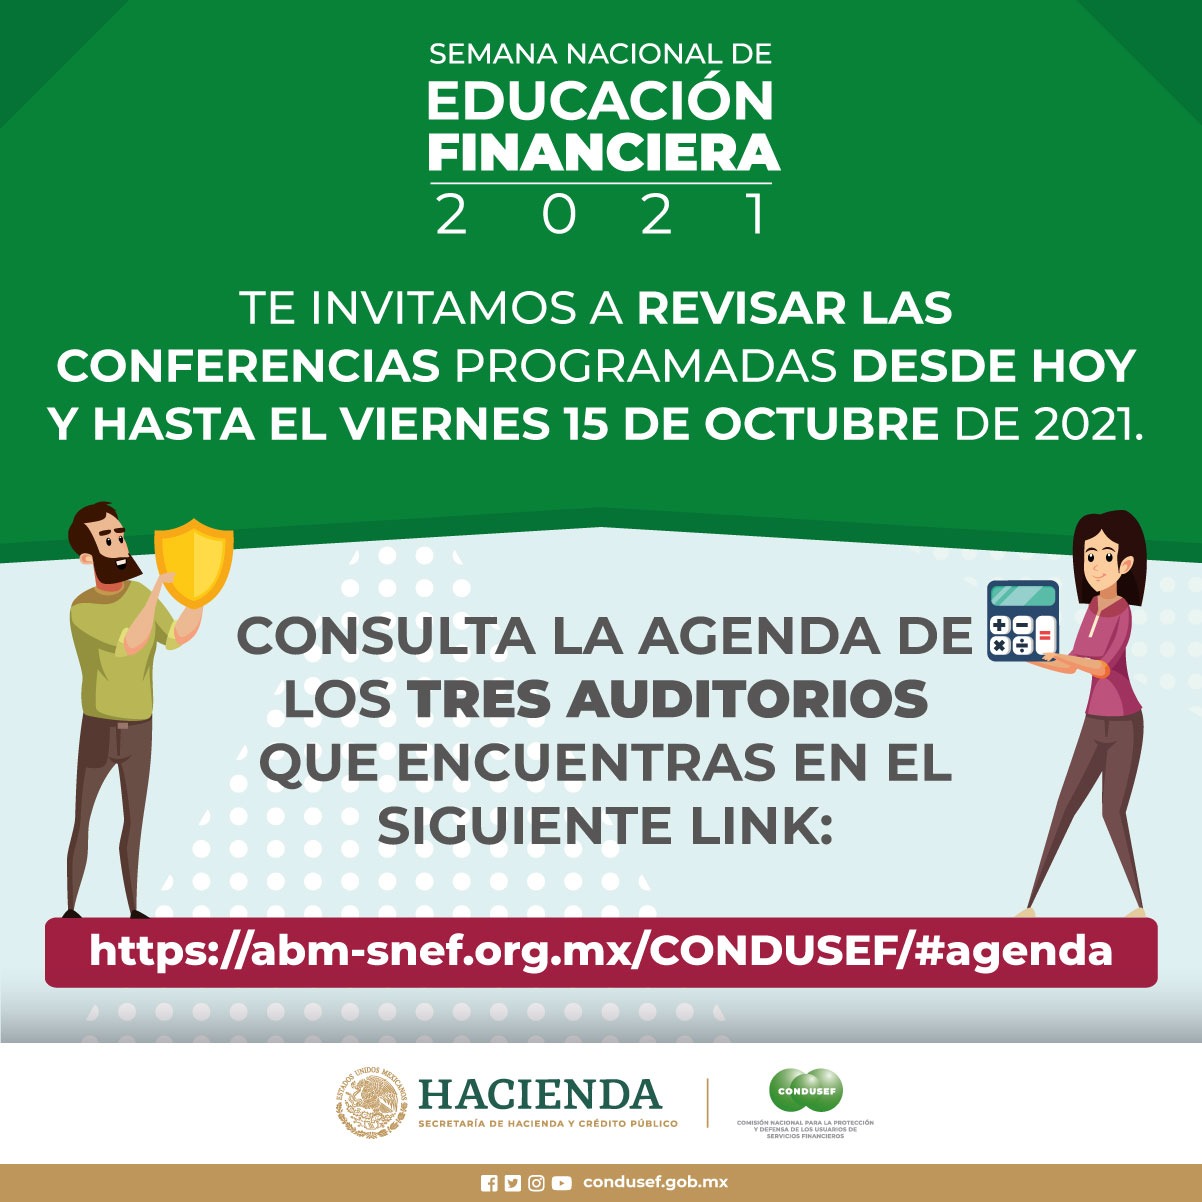 (Español) Participa en la Semana Nacional de Educación Financiera